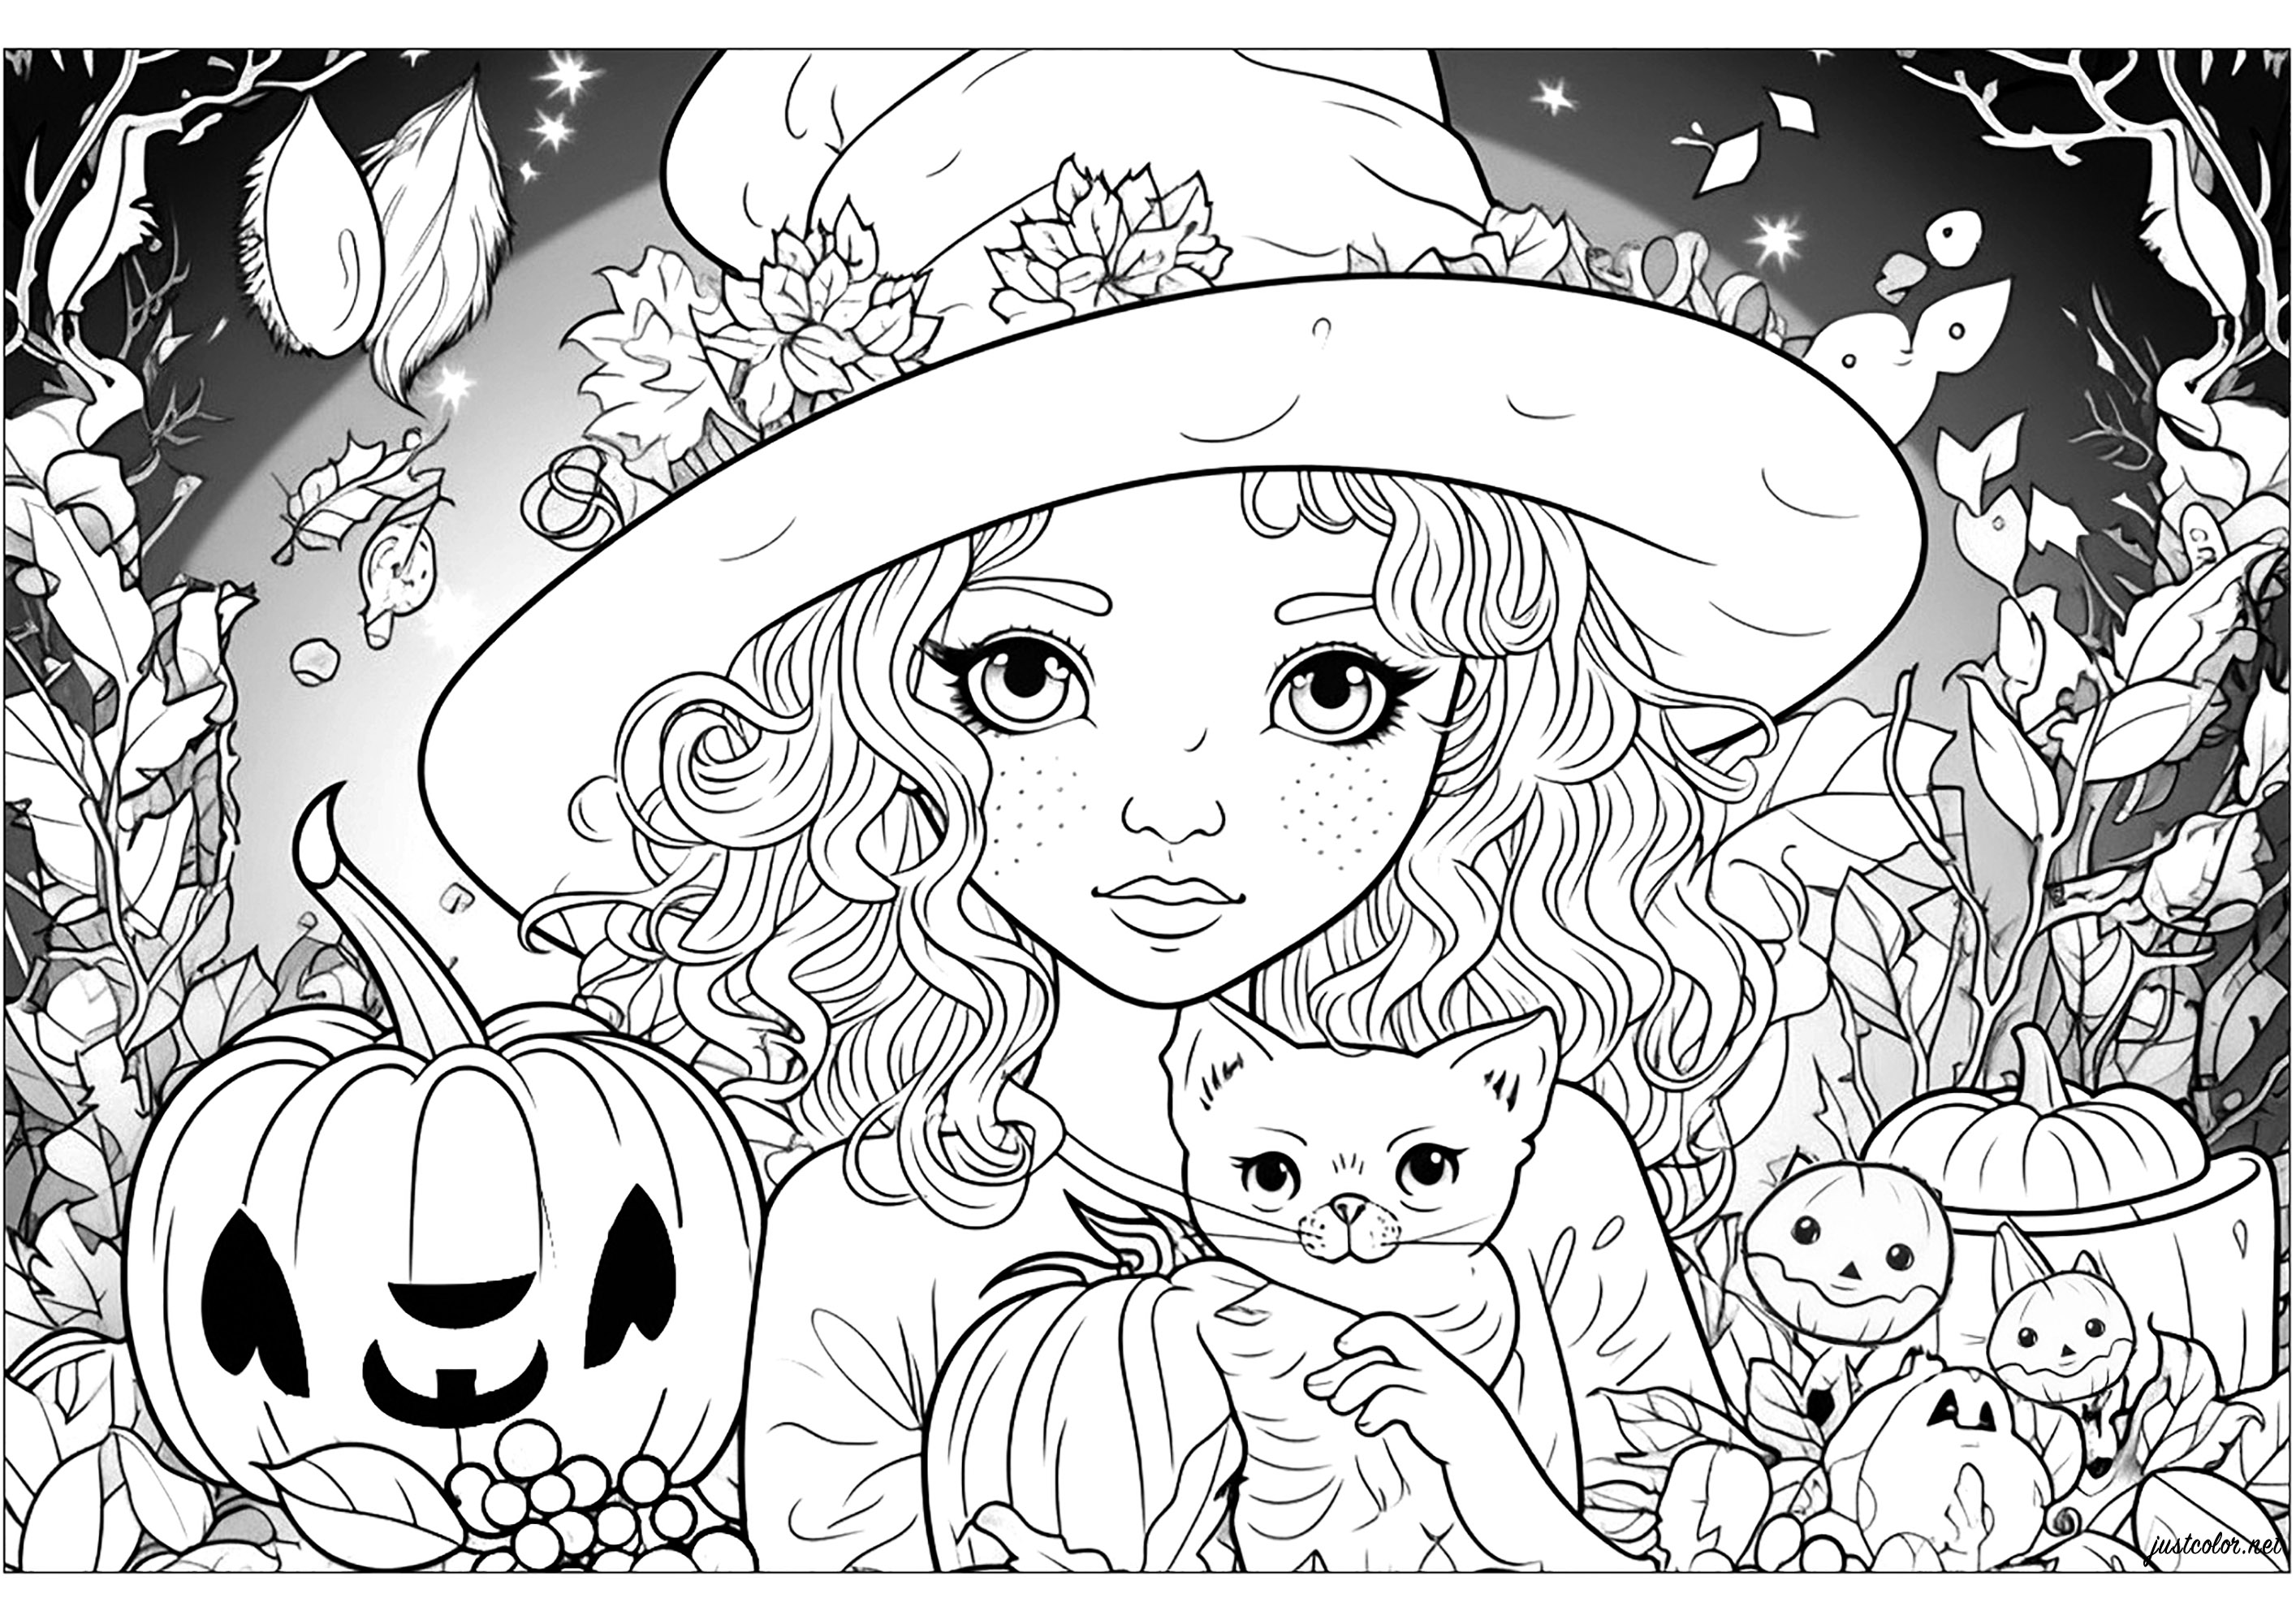 A jovem bruxa e o seu gato - Dia das Bruxas - Coloring Pages for